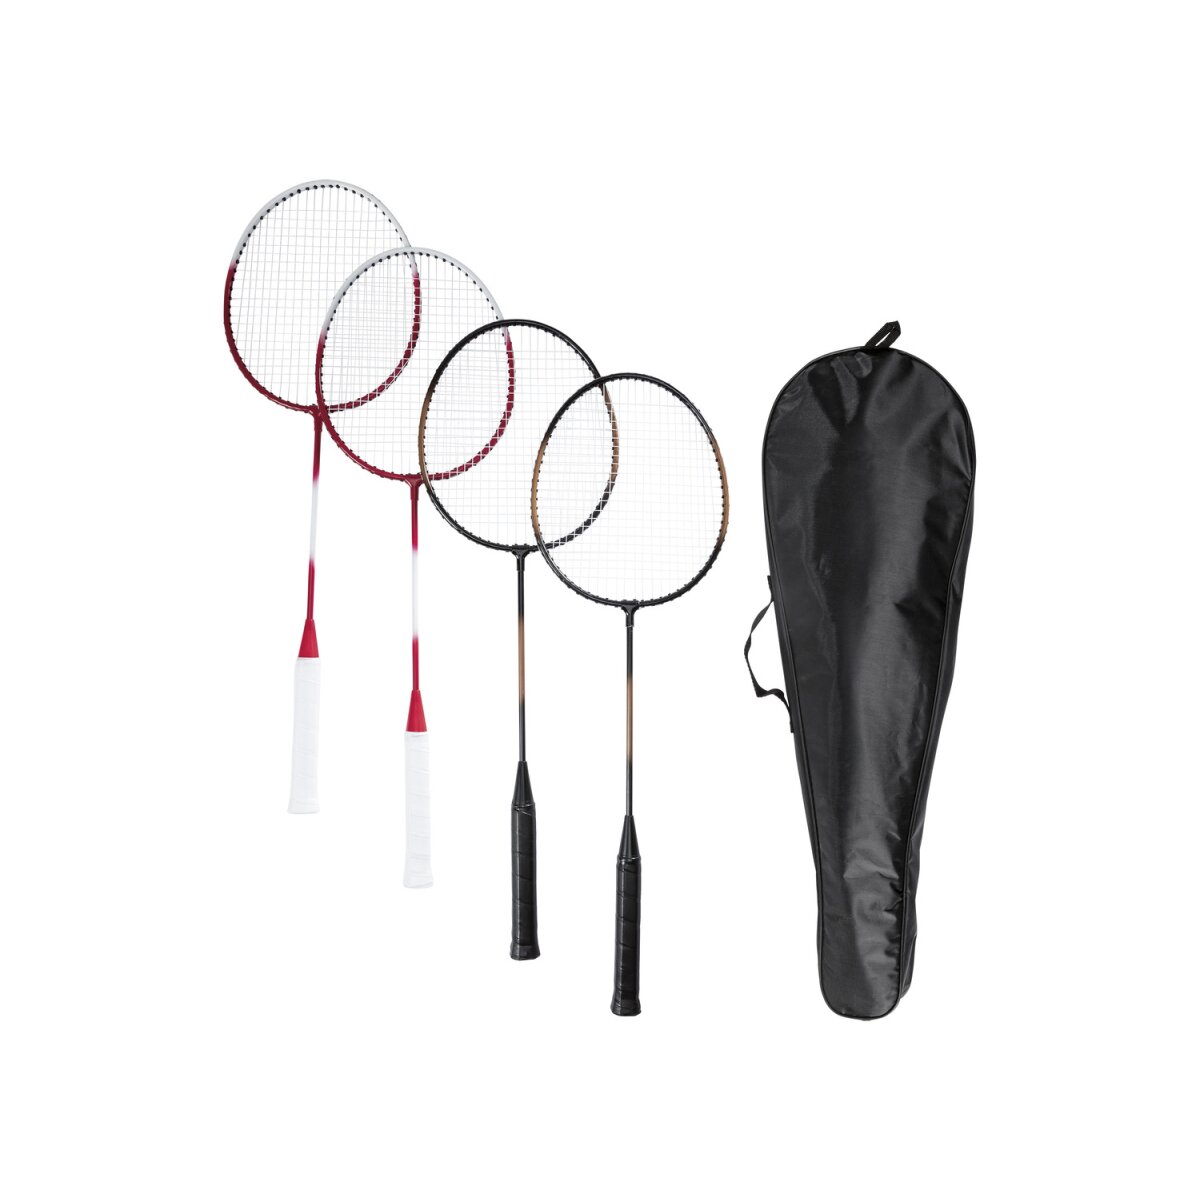 € CRIVIT sonstiges, Badminton-Set 10,99 B-Ware - mit Netz